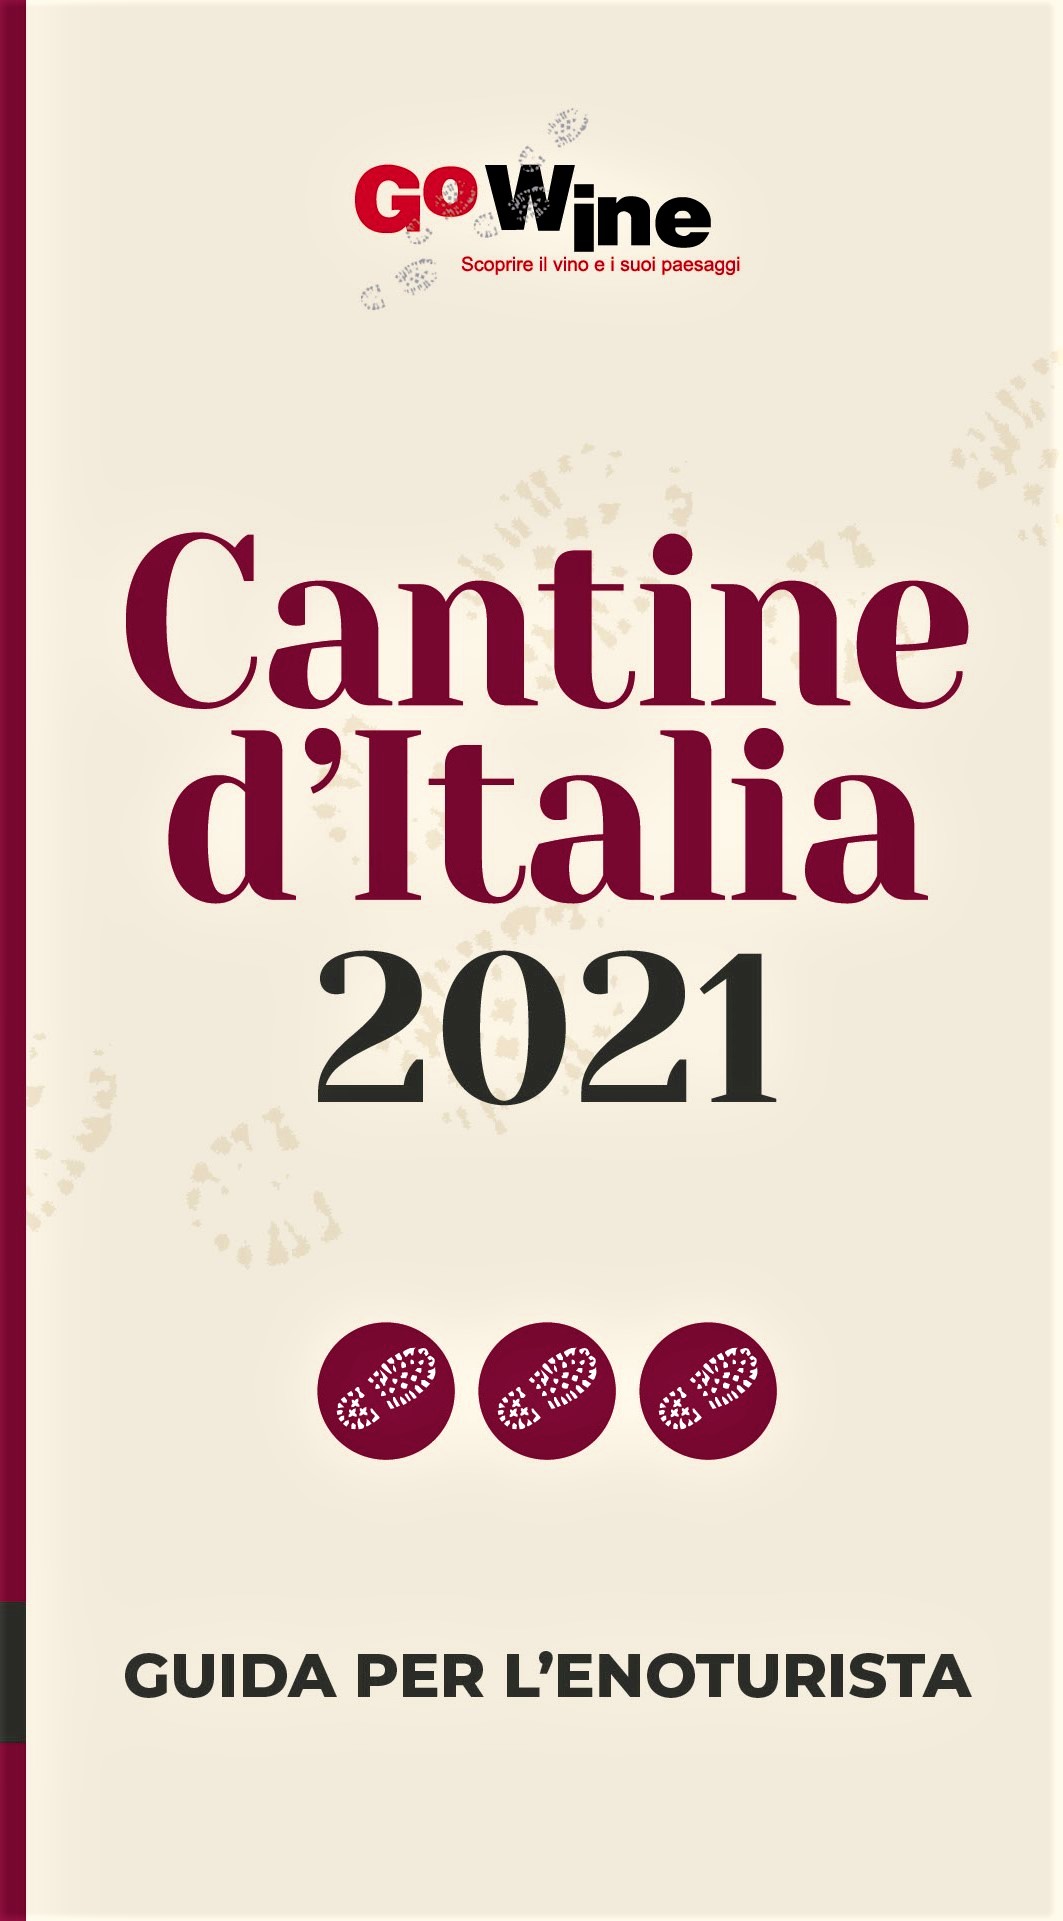 CANTINE D'ITALIA 2021, la Guida Go Wine per l’Enoturista